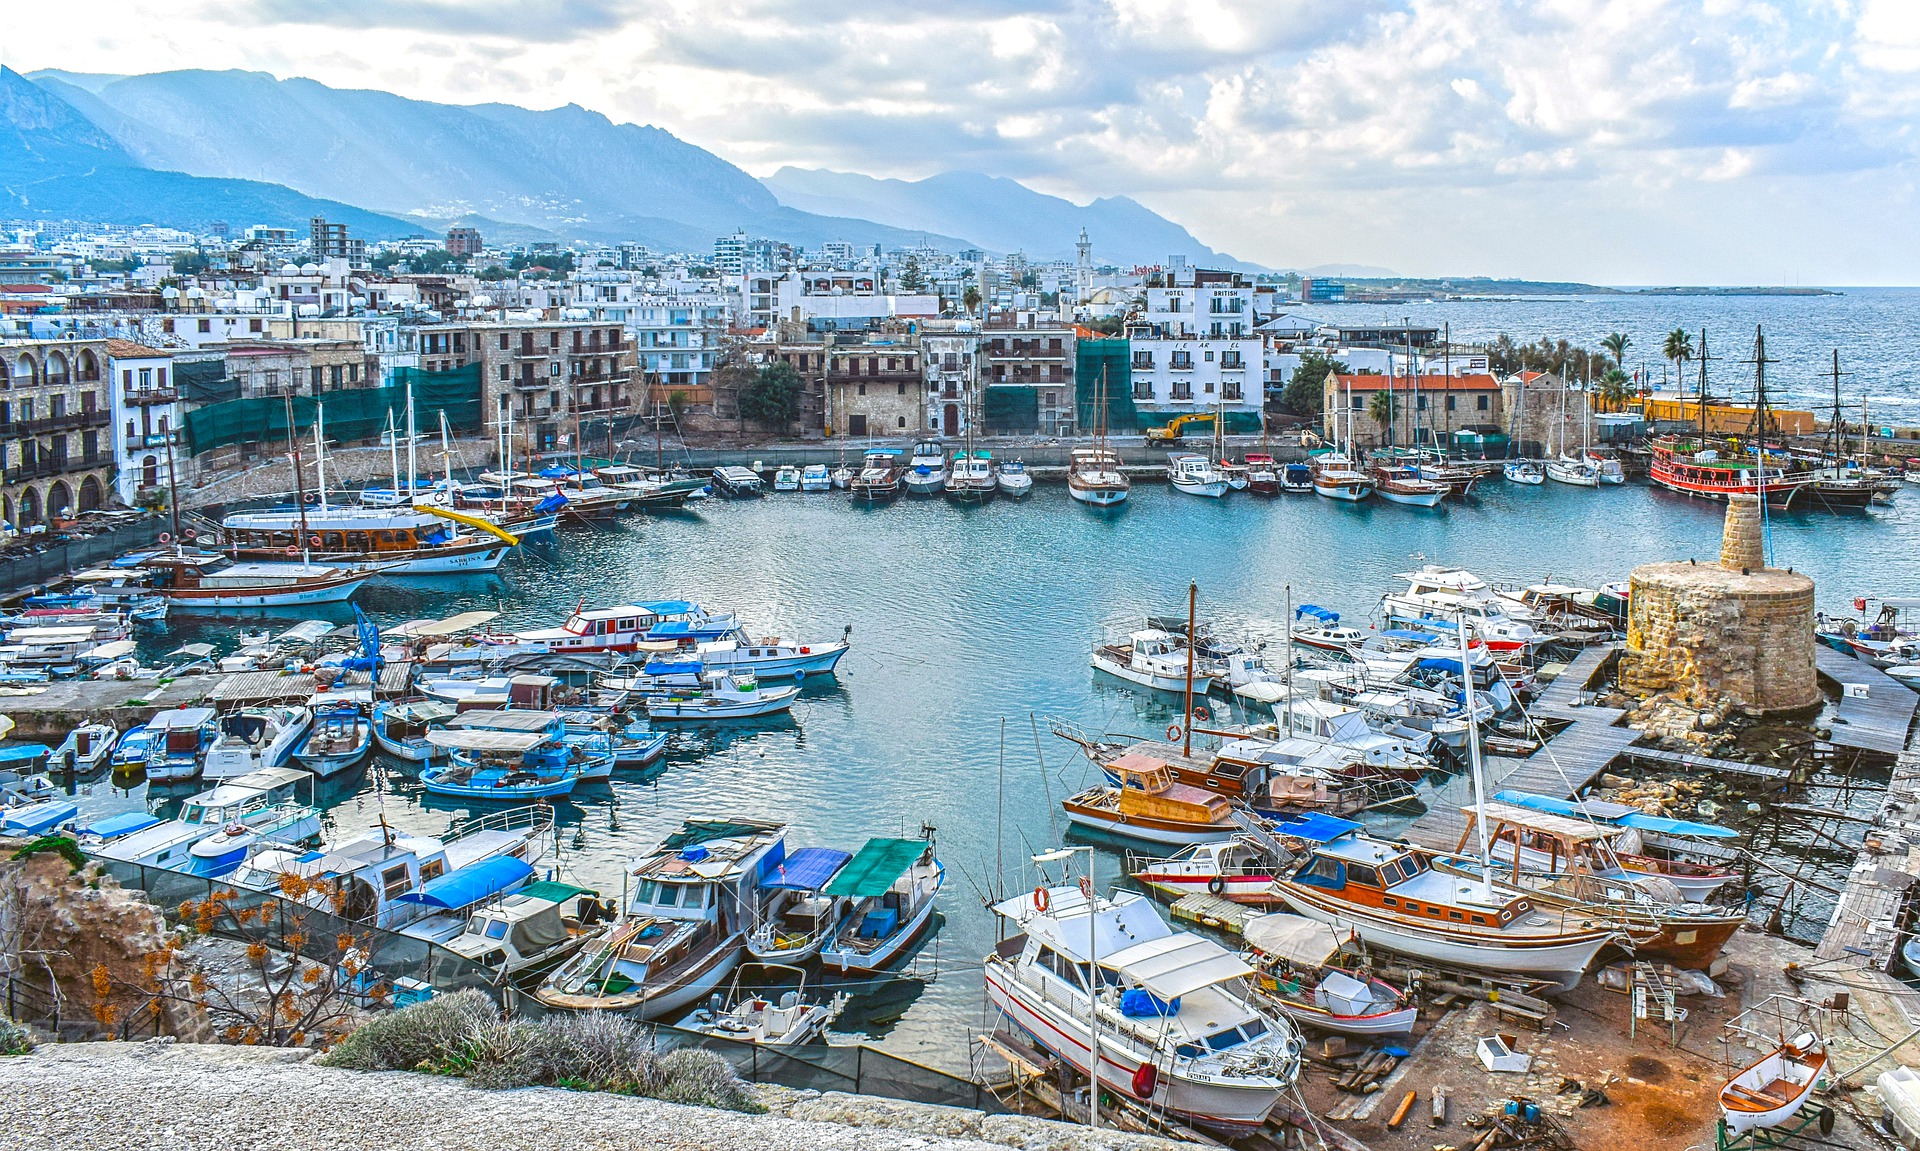 Häfen und Jachthäfen in Nordzypern: Ein nautisches Paradies